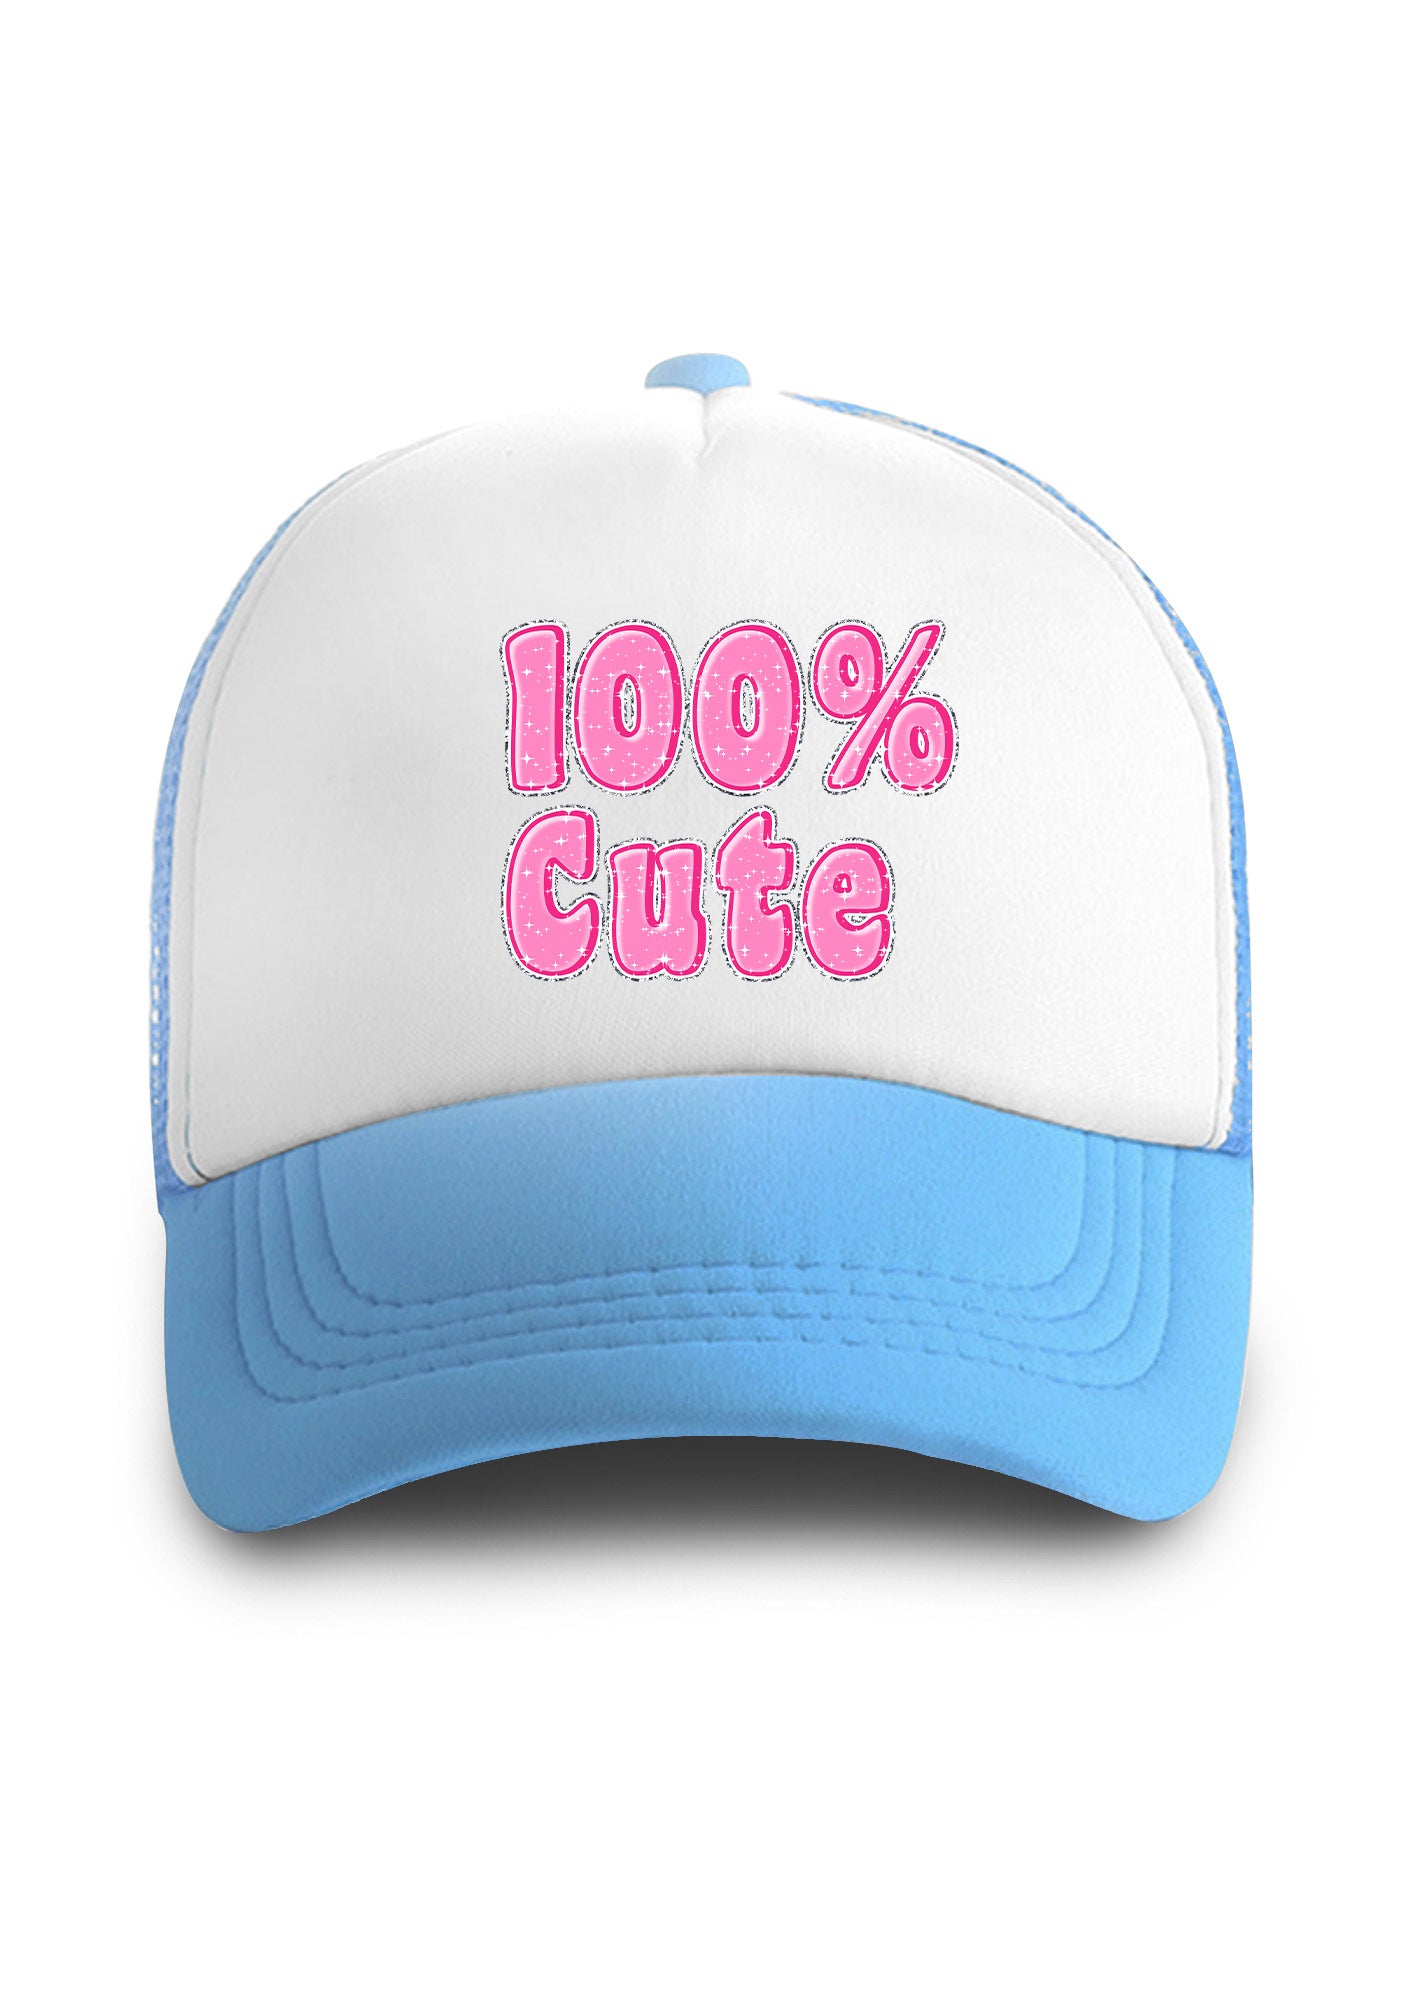 100% Cute Trucker Hat